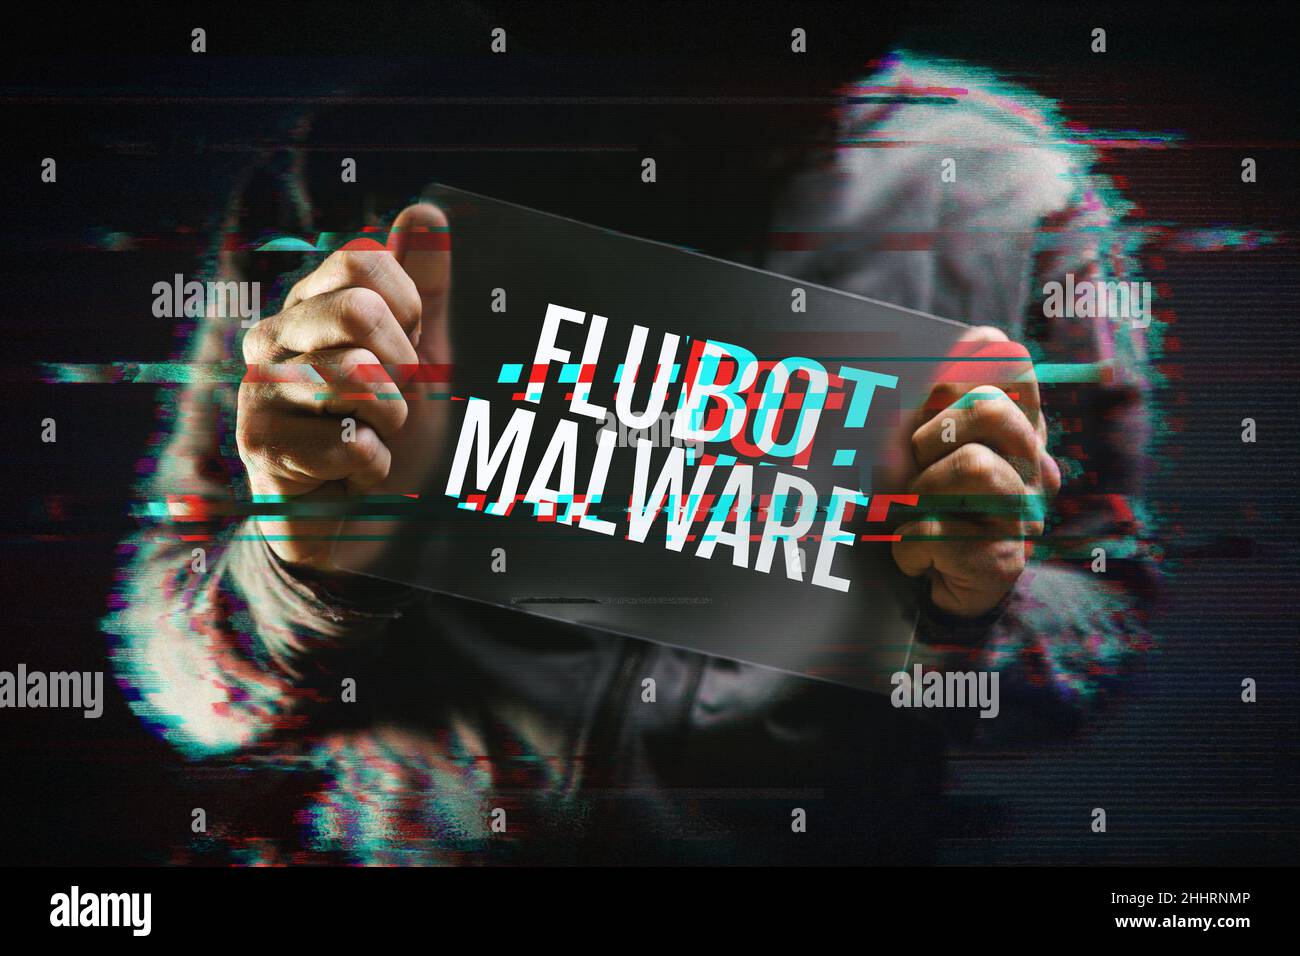 Flubot Malware-Konzept mit kapuztem Hacker- und Glitch-Effekt. Flubot ist Malware, die auf mobilen Plattformen verbreitet wird. Stockfoto